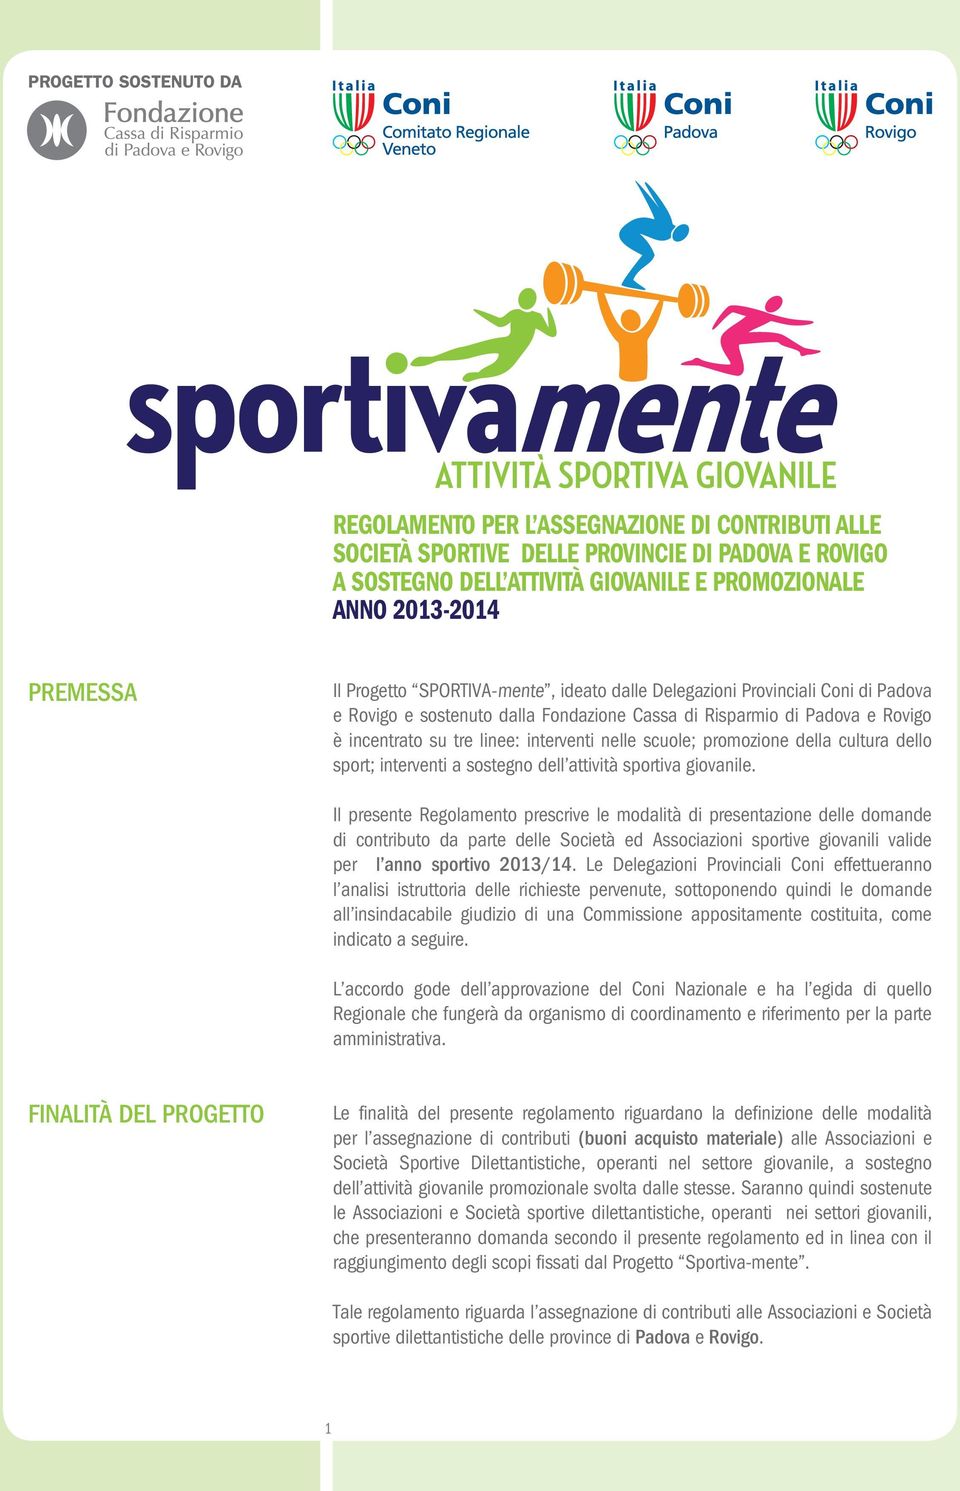 promozione della cultura dello sport; interventi a sostegno dell attività sportiva giovanile.